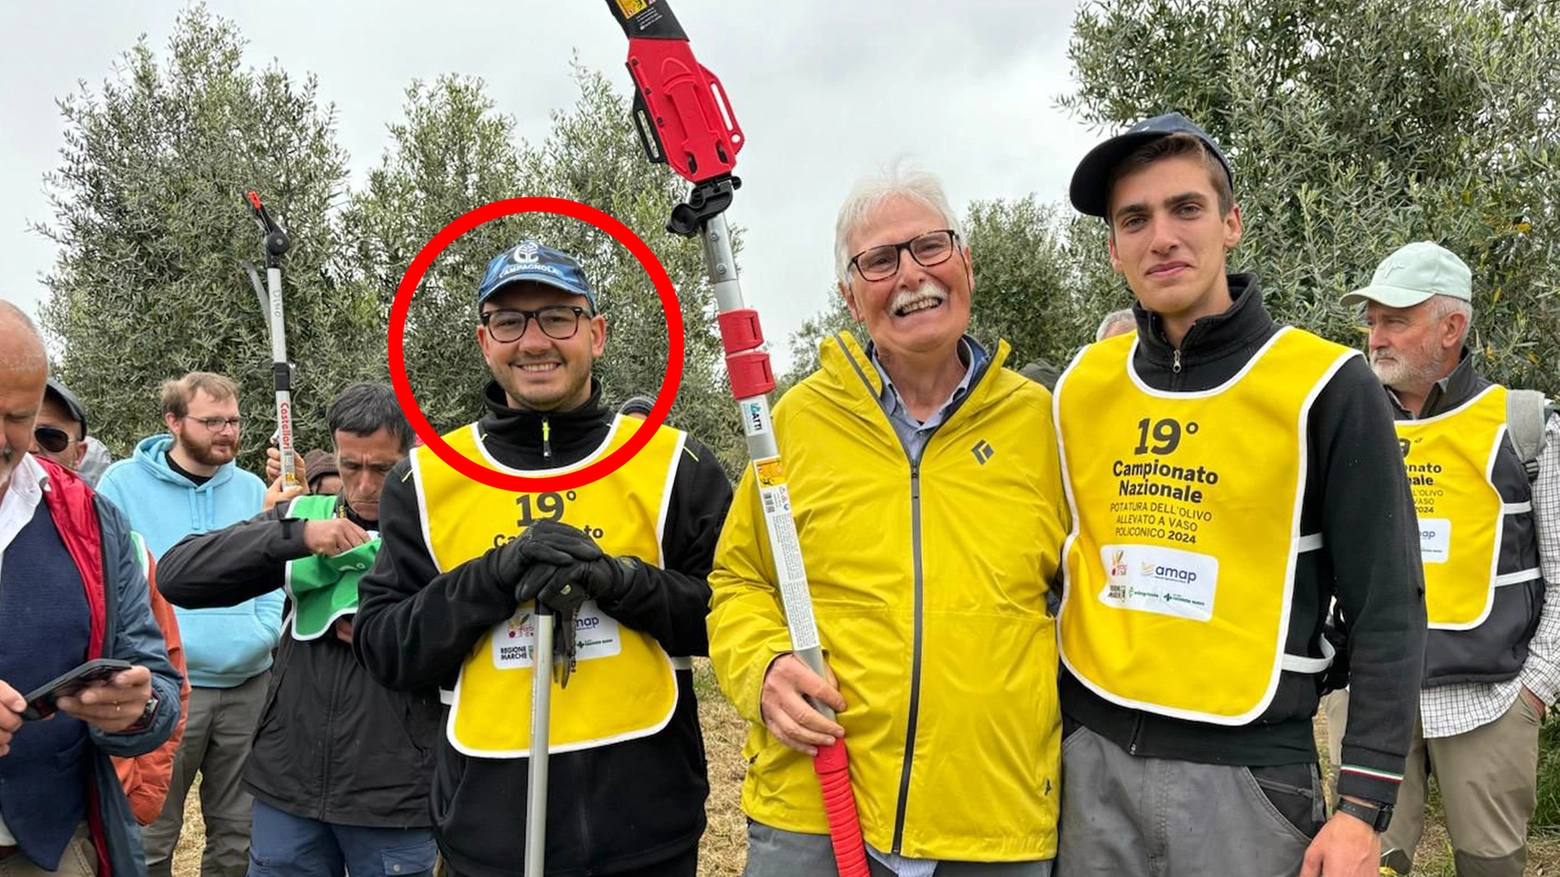 Il campione di potatura Edoardo Dottori, 33 anni (cerchiato in rosso) con la squadra delle Marche